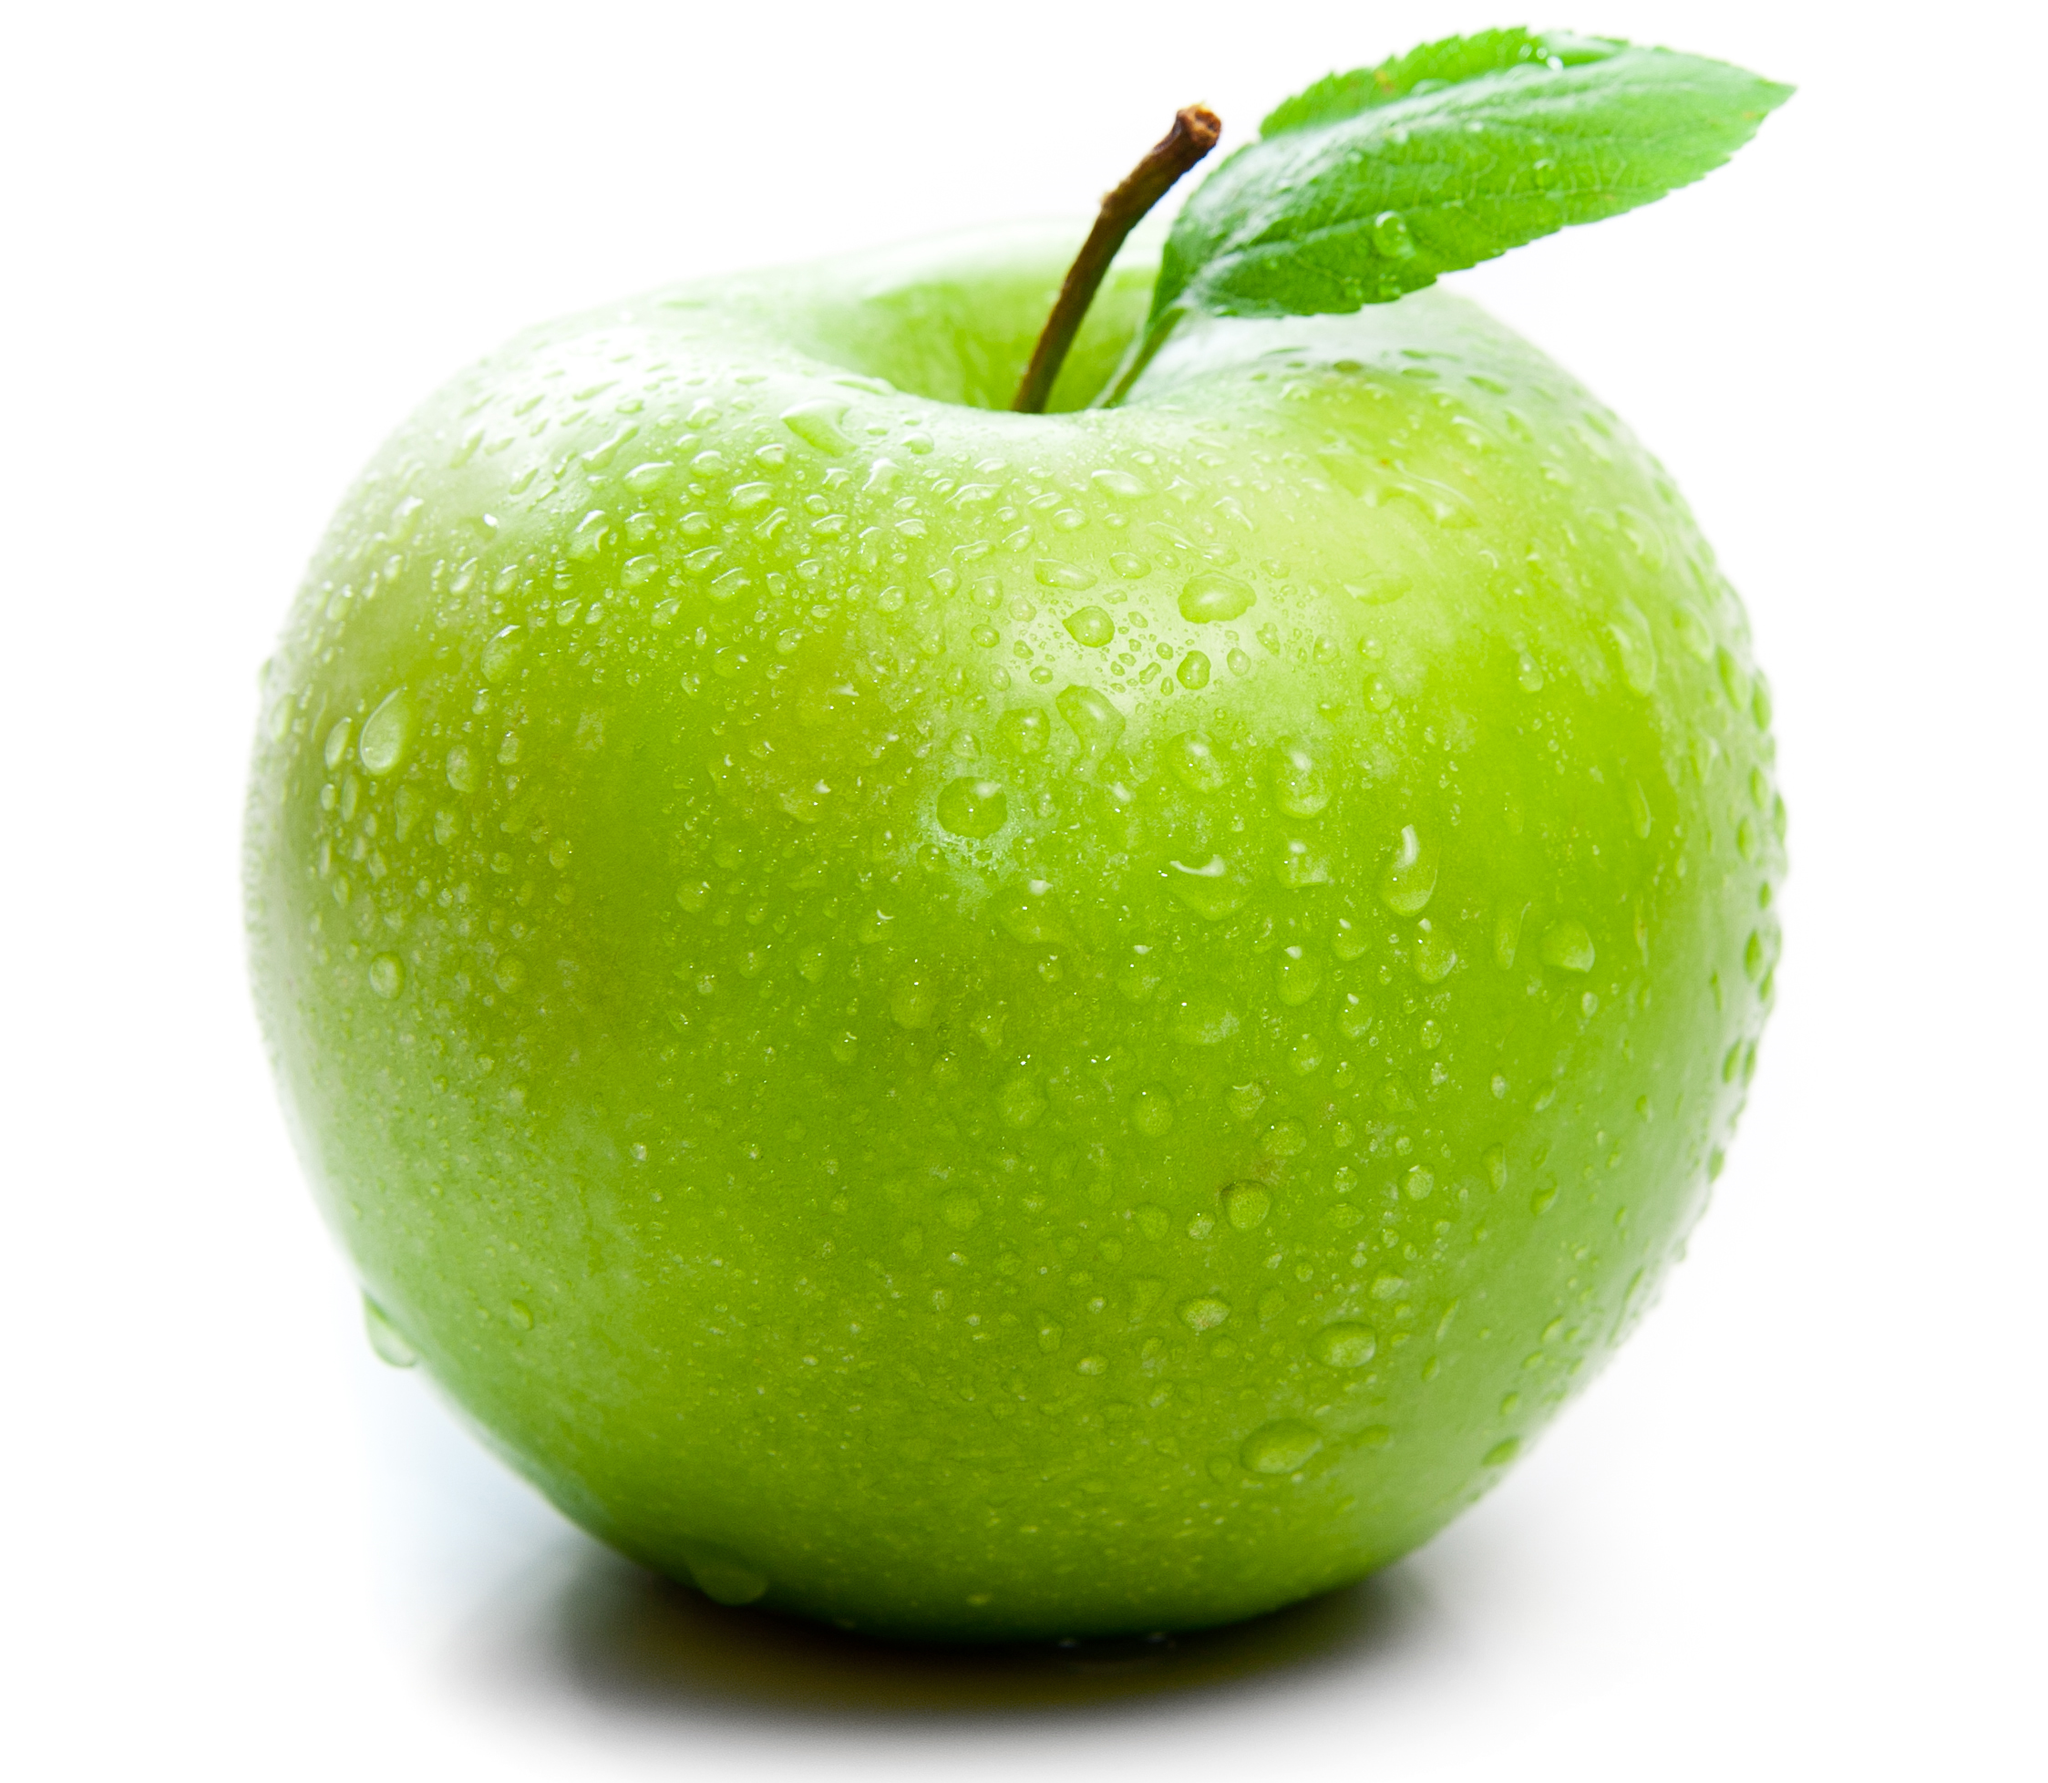 Apple Fresh Green Fragrance Oil